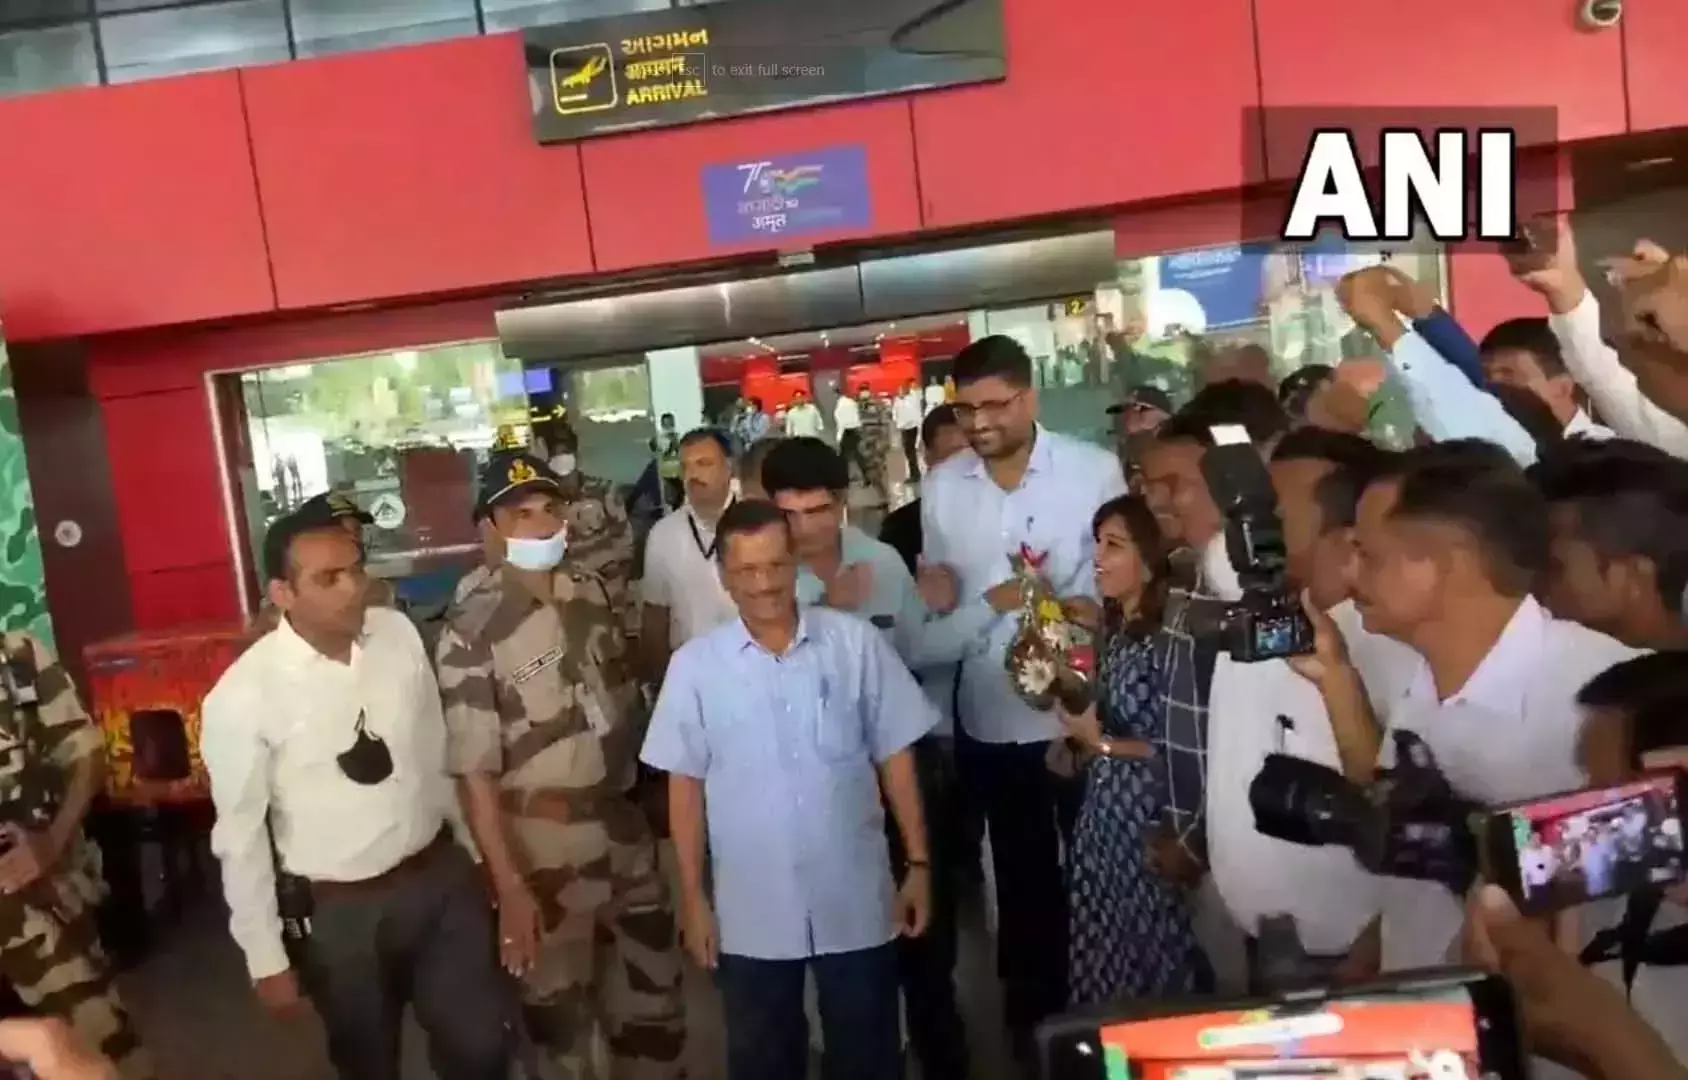 एक दिवसीय दौरे पर गुजरात के वडोदरा एयरपोर्ट पर पहुंचे  दिल्ली के सीएम केजरीवाल के सामने मोदी मोदी के लगे नारे